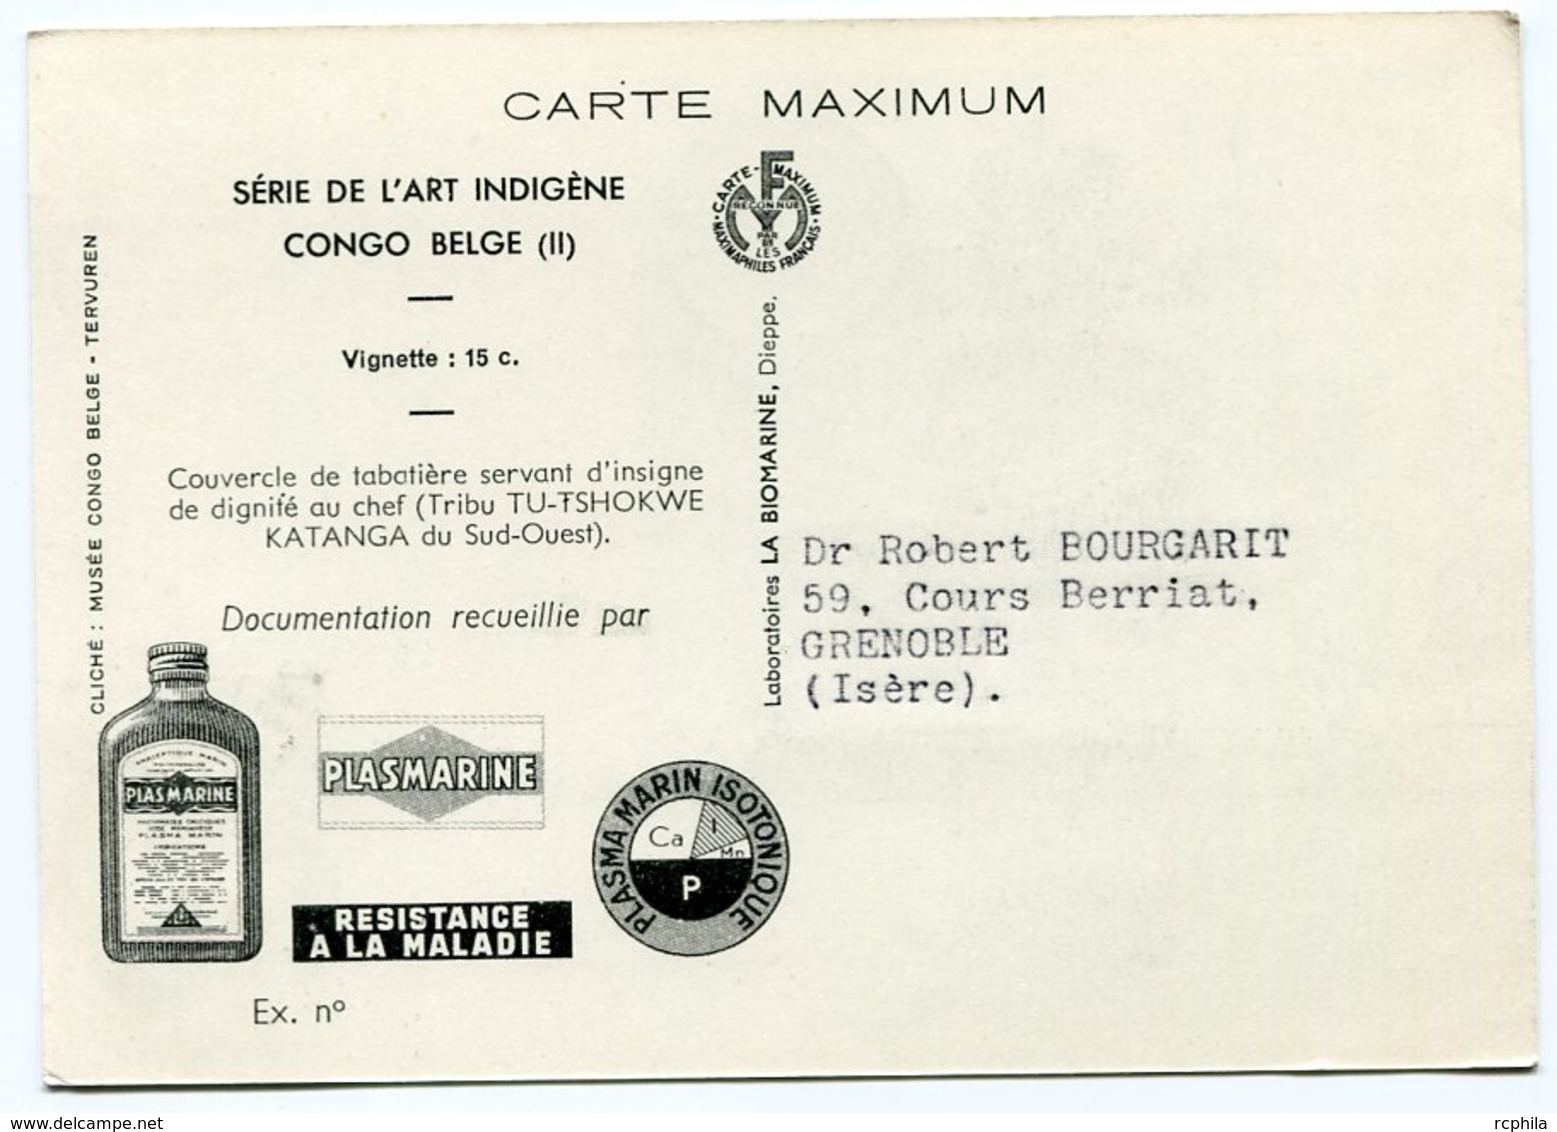 RC 12840 CONGO BELGE 1952 CARTE PLASMARINE PUBLICITÉ ADRESSÉE AUX MEDECINS - Brieven En Documenten